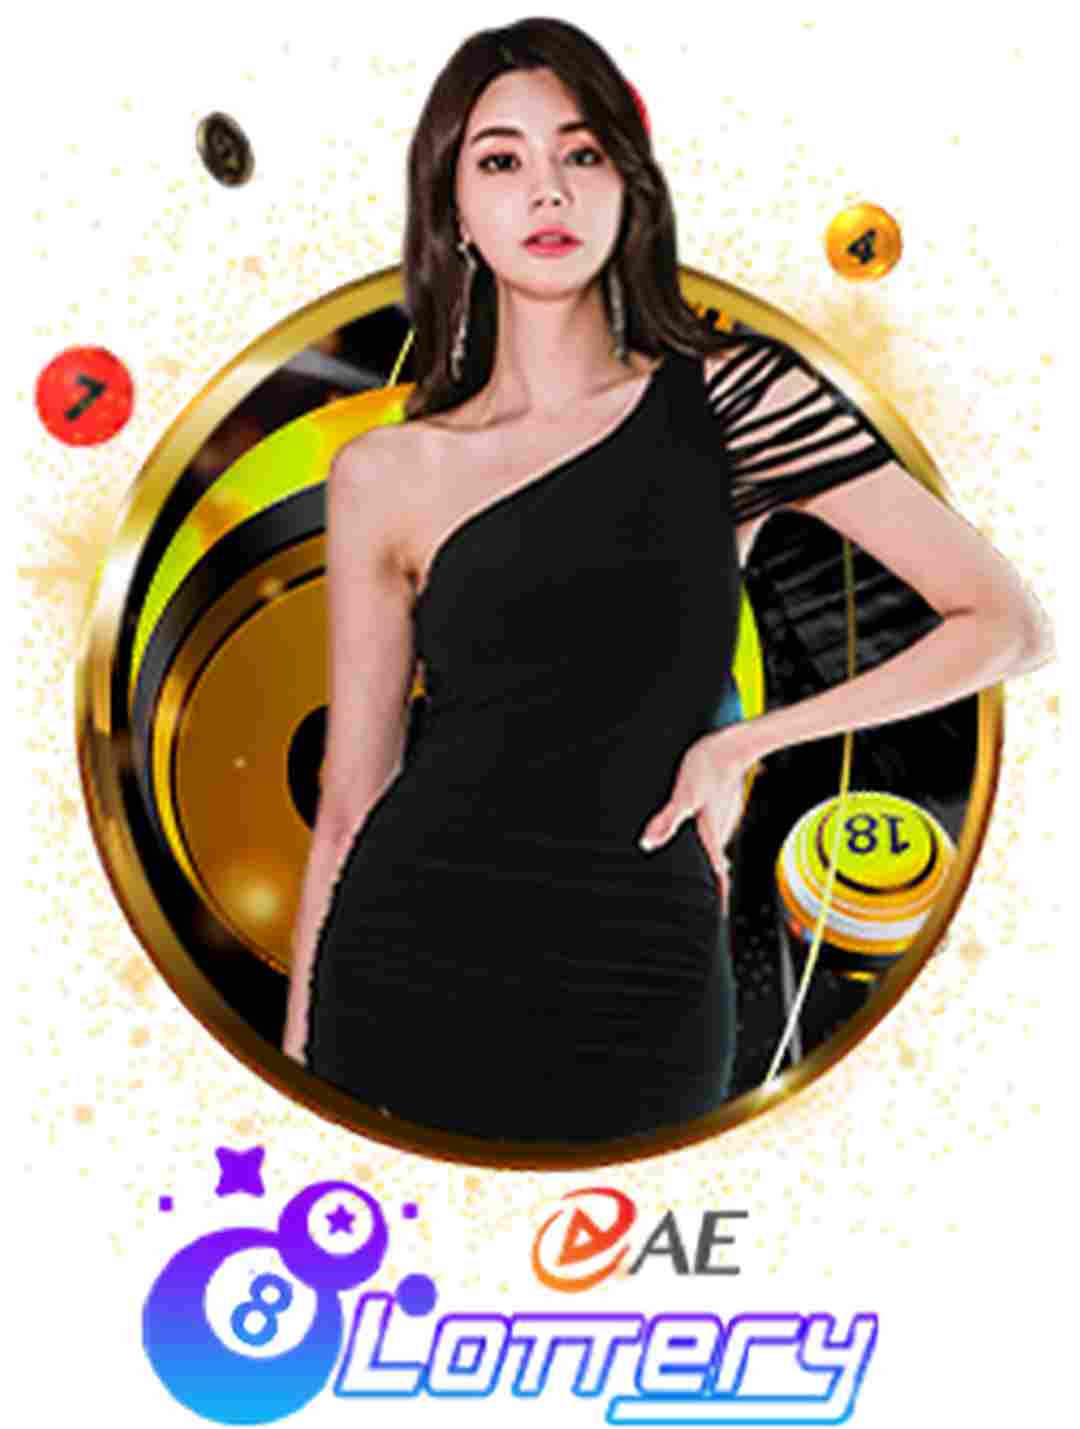 AE Lottery logo nổi bật nhận diện thương hiệu